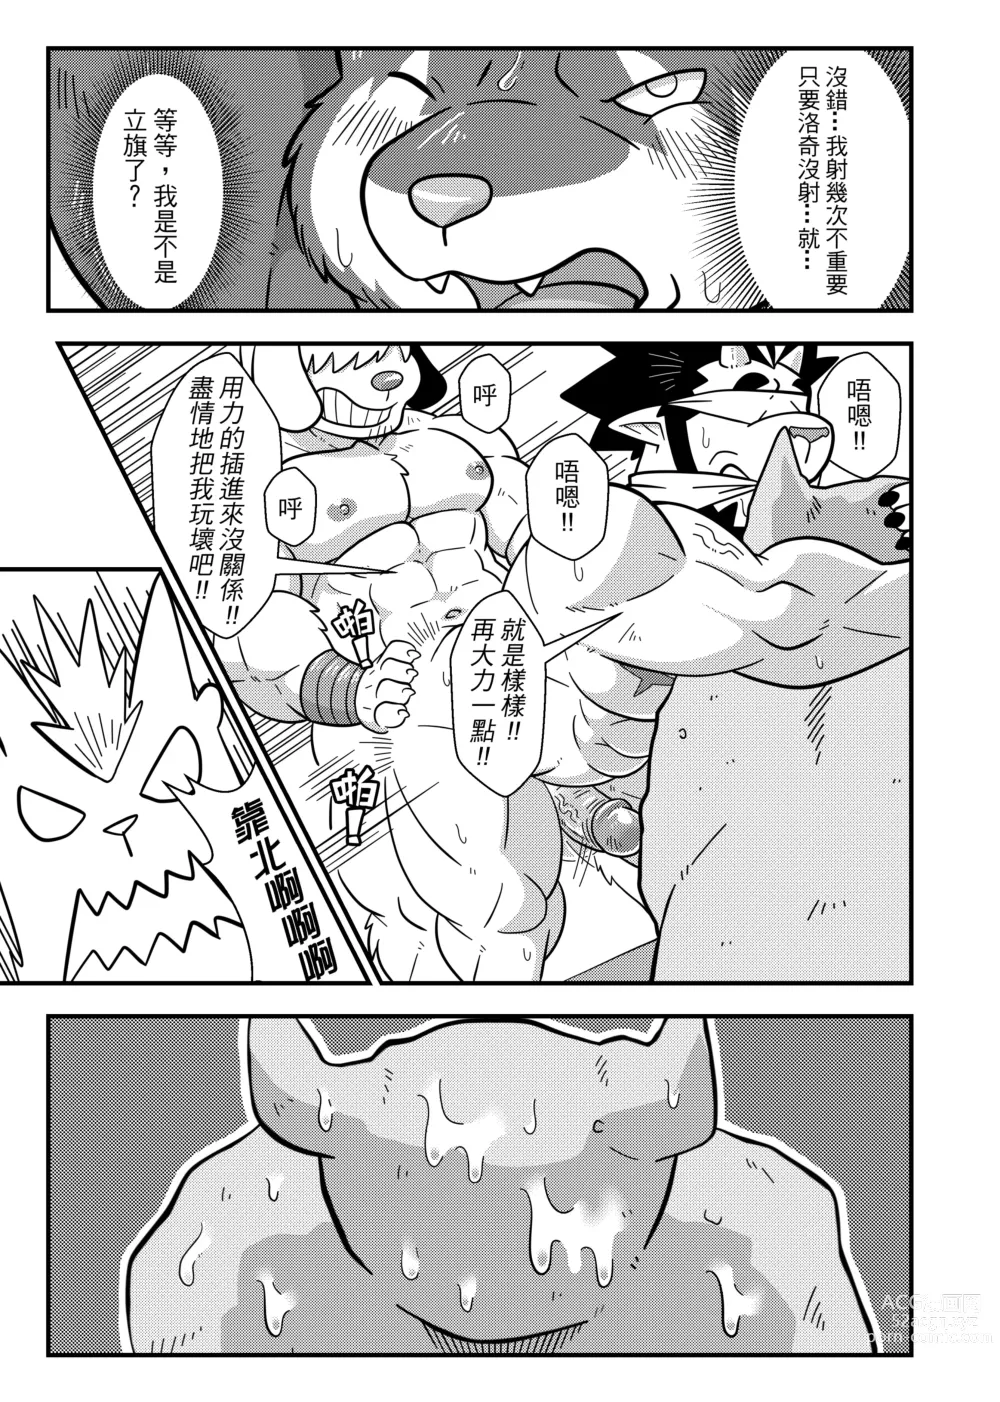 Page 30 of doujinshi 勇者的大小只有魔王塞得下4